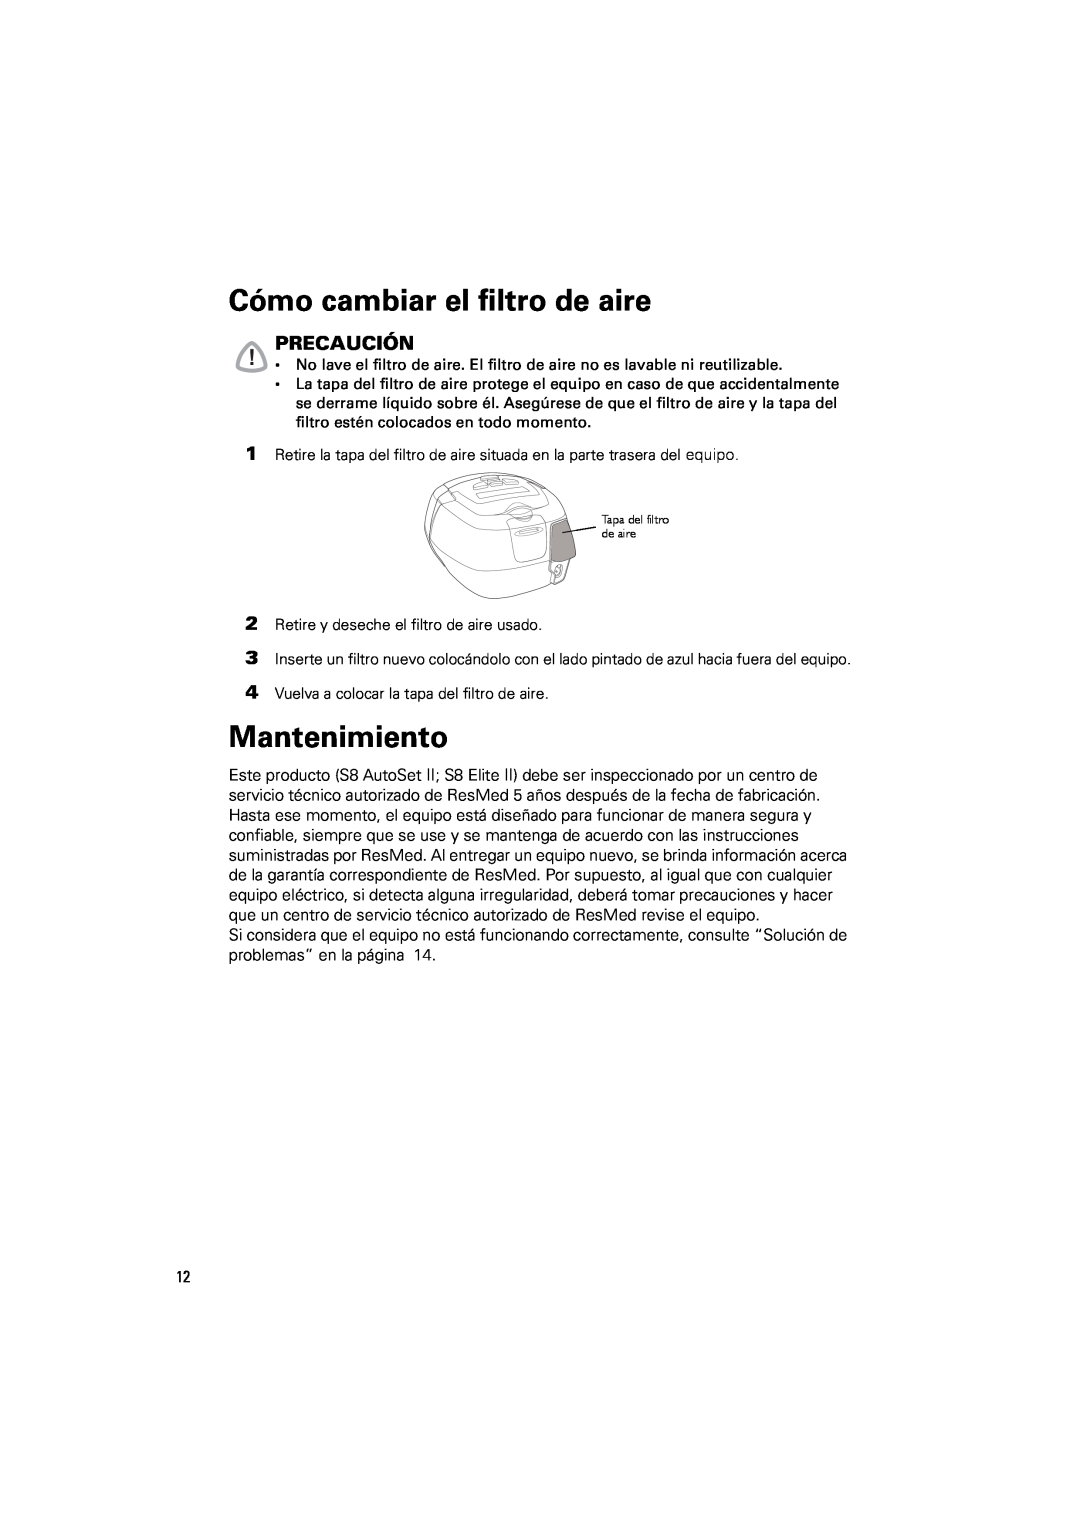 ResMed s8 manual Cómo cambiar el filtro de aire, Mantenimiento, Precaución 